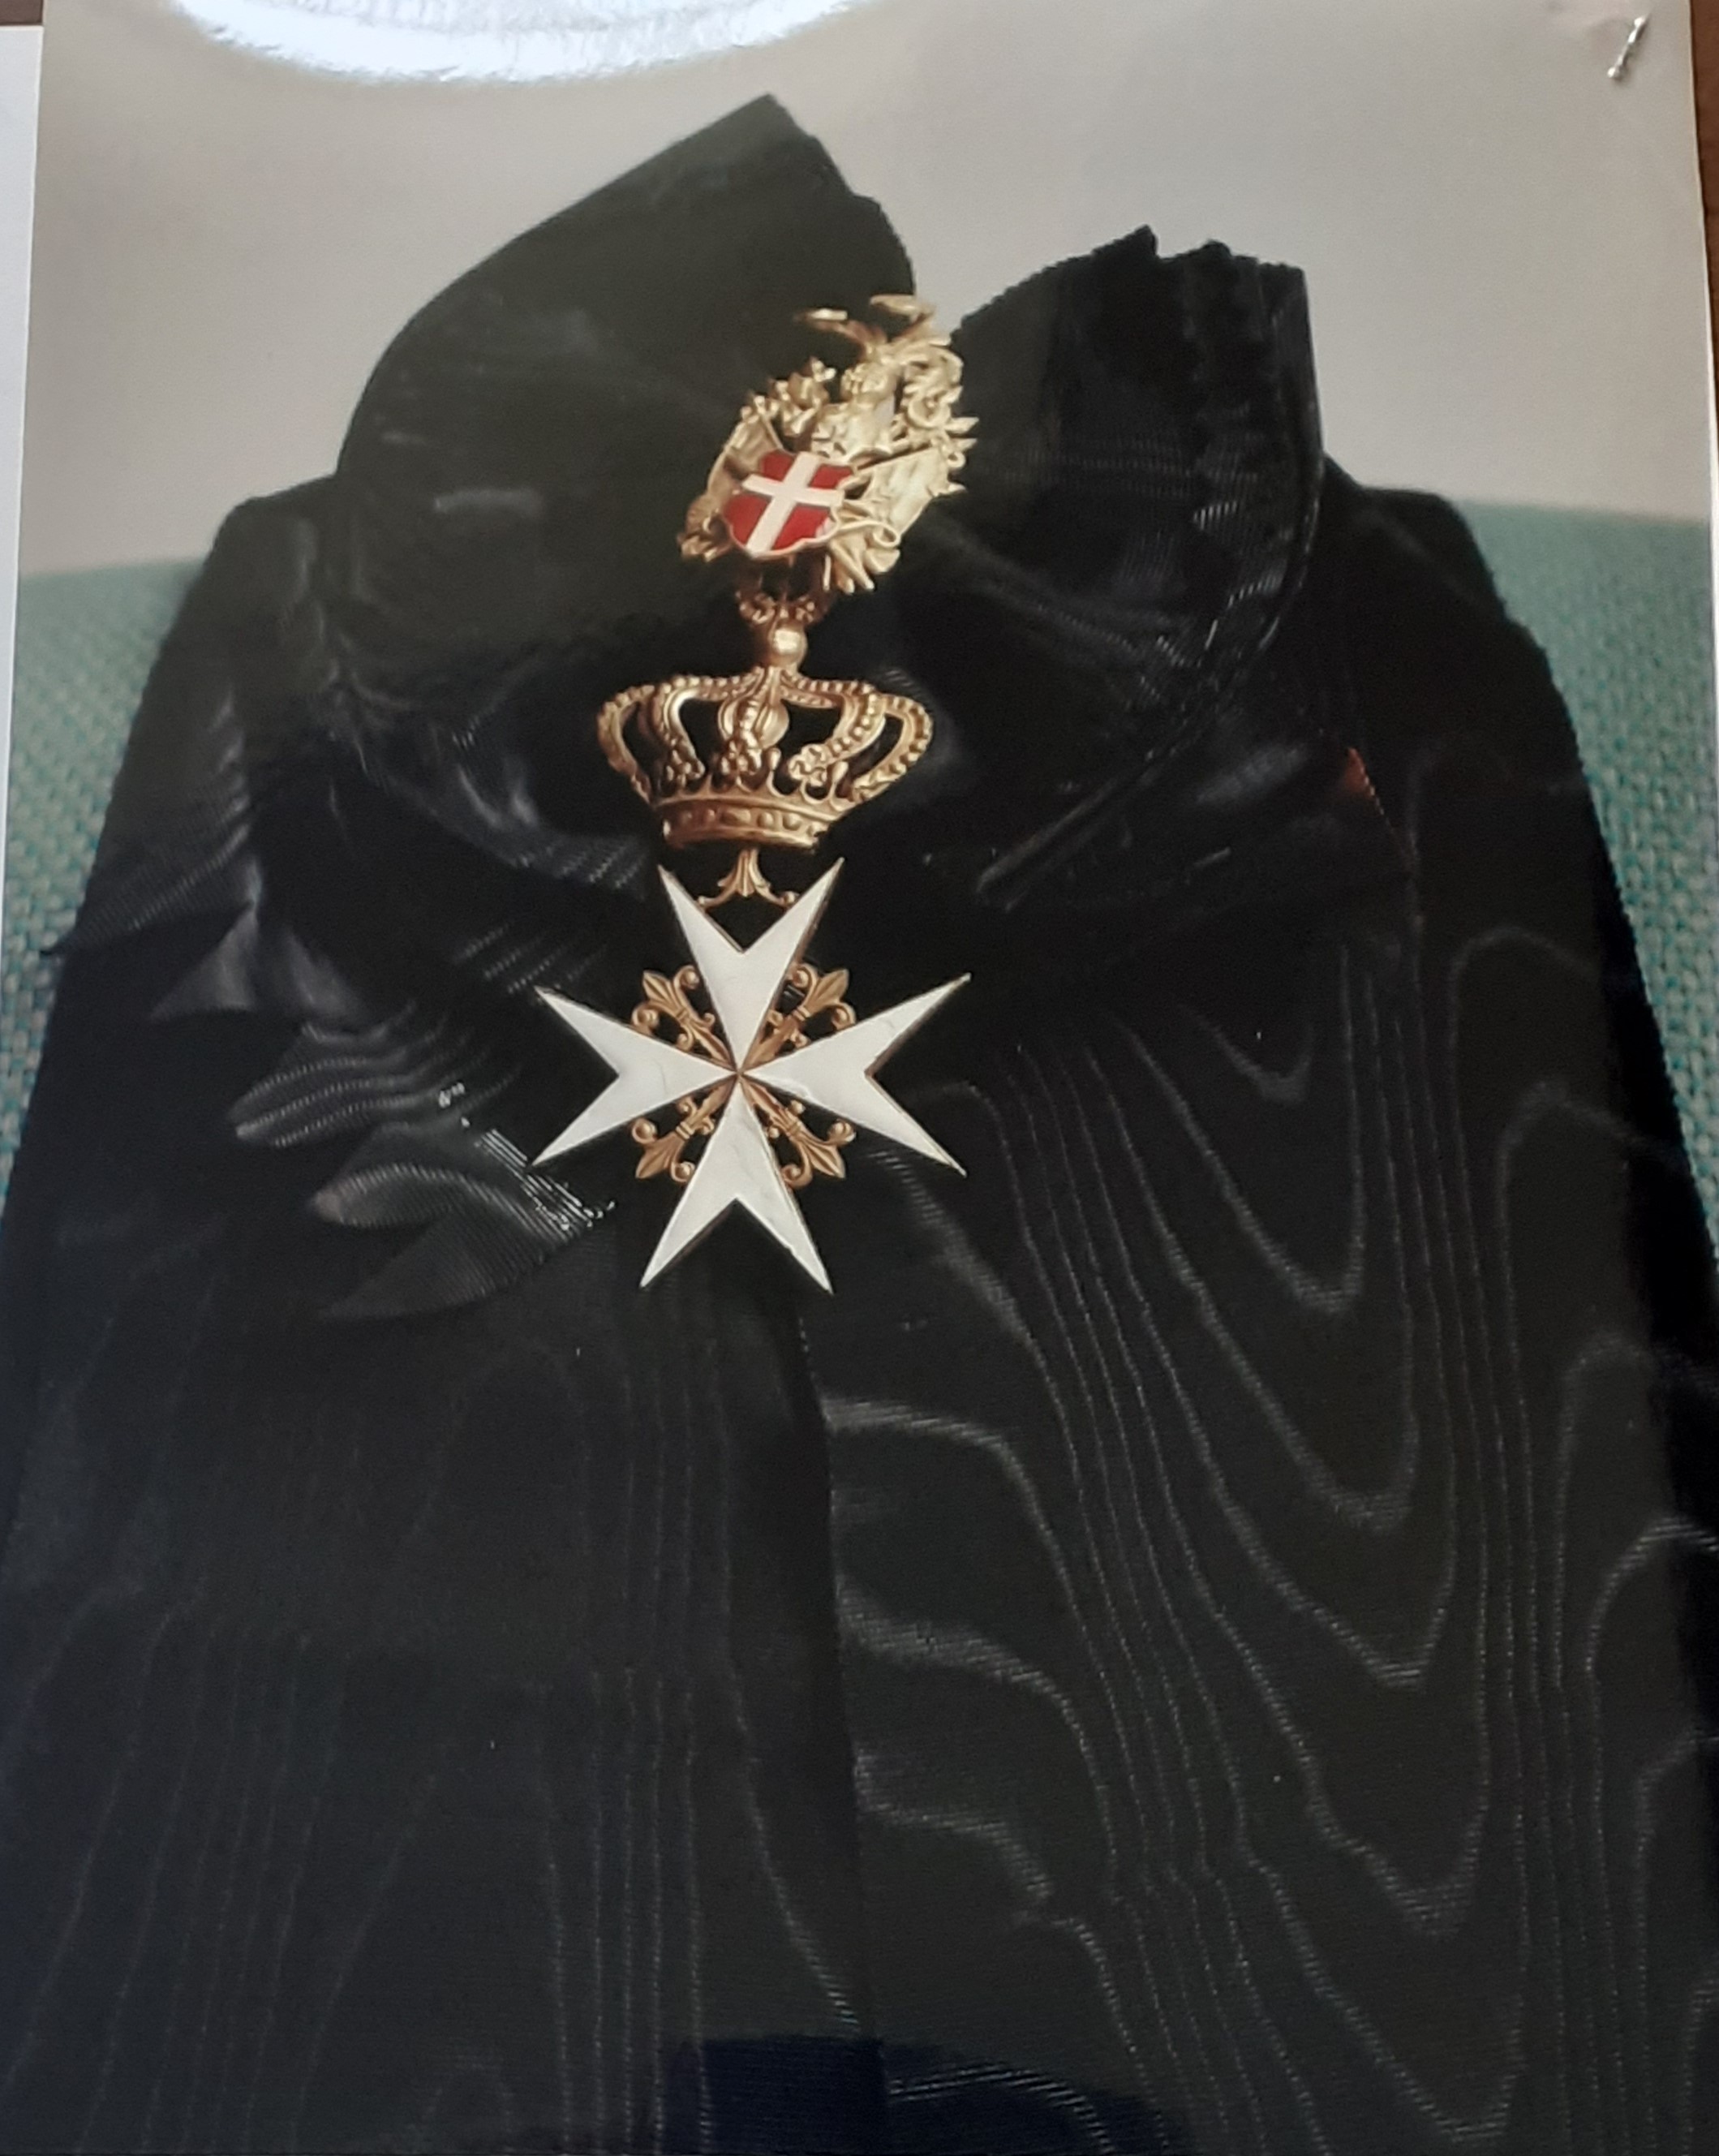 Fascia di gran croce di onore e devozione dell'Ordine Militare di Malta (cimelio militare) - ambito romano (prima metà XX Secolo)